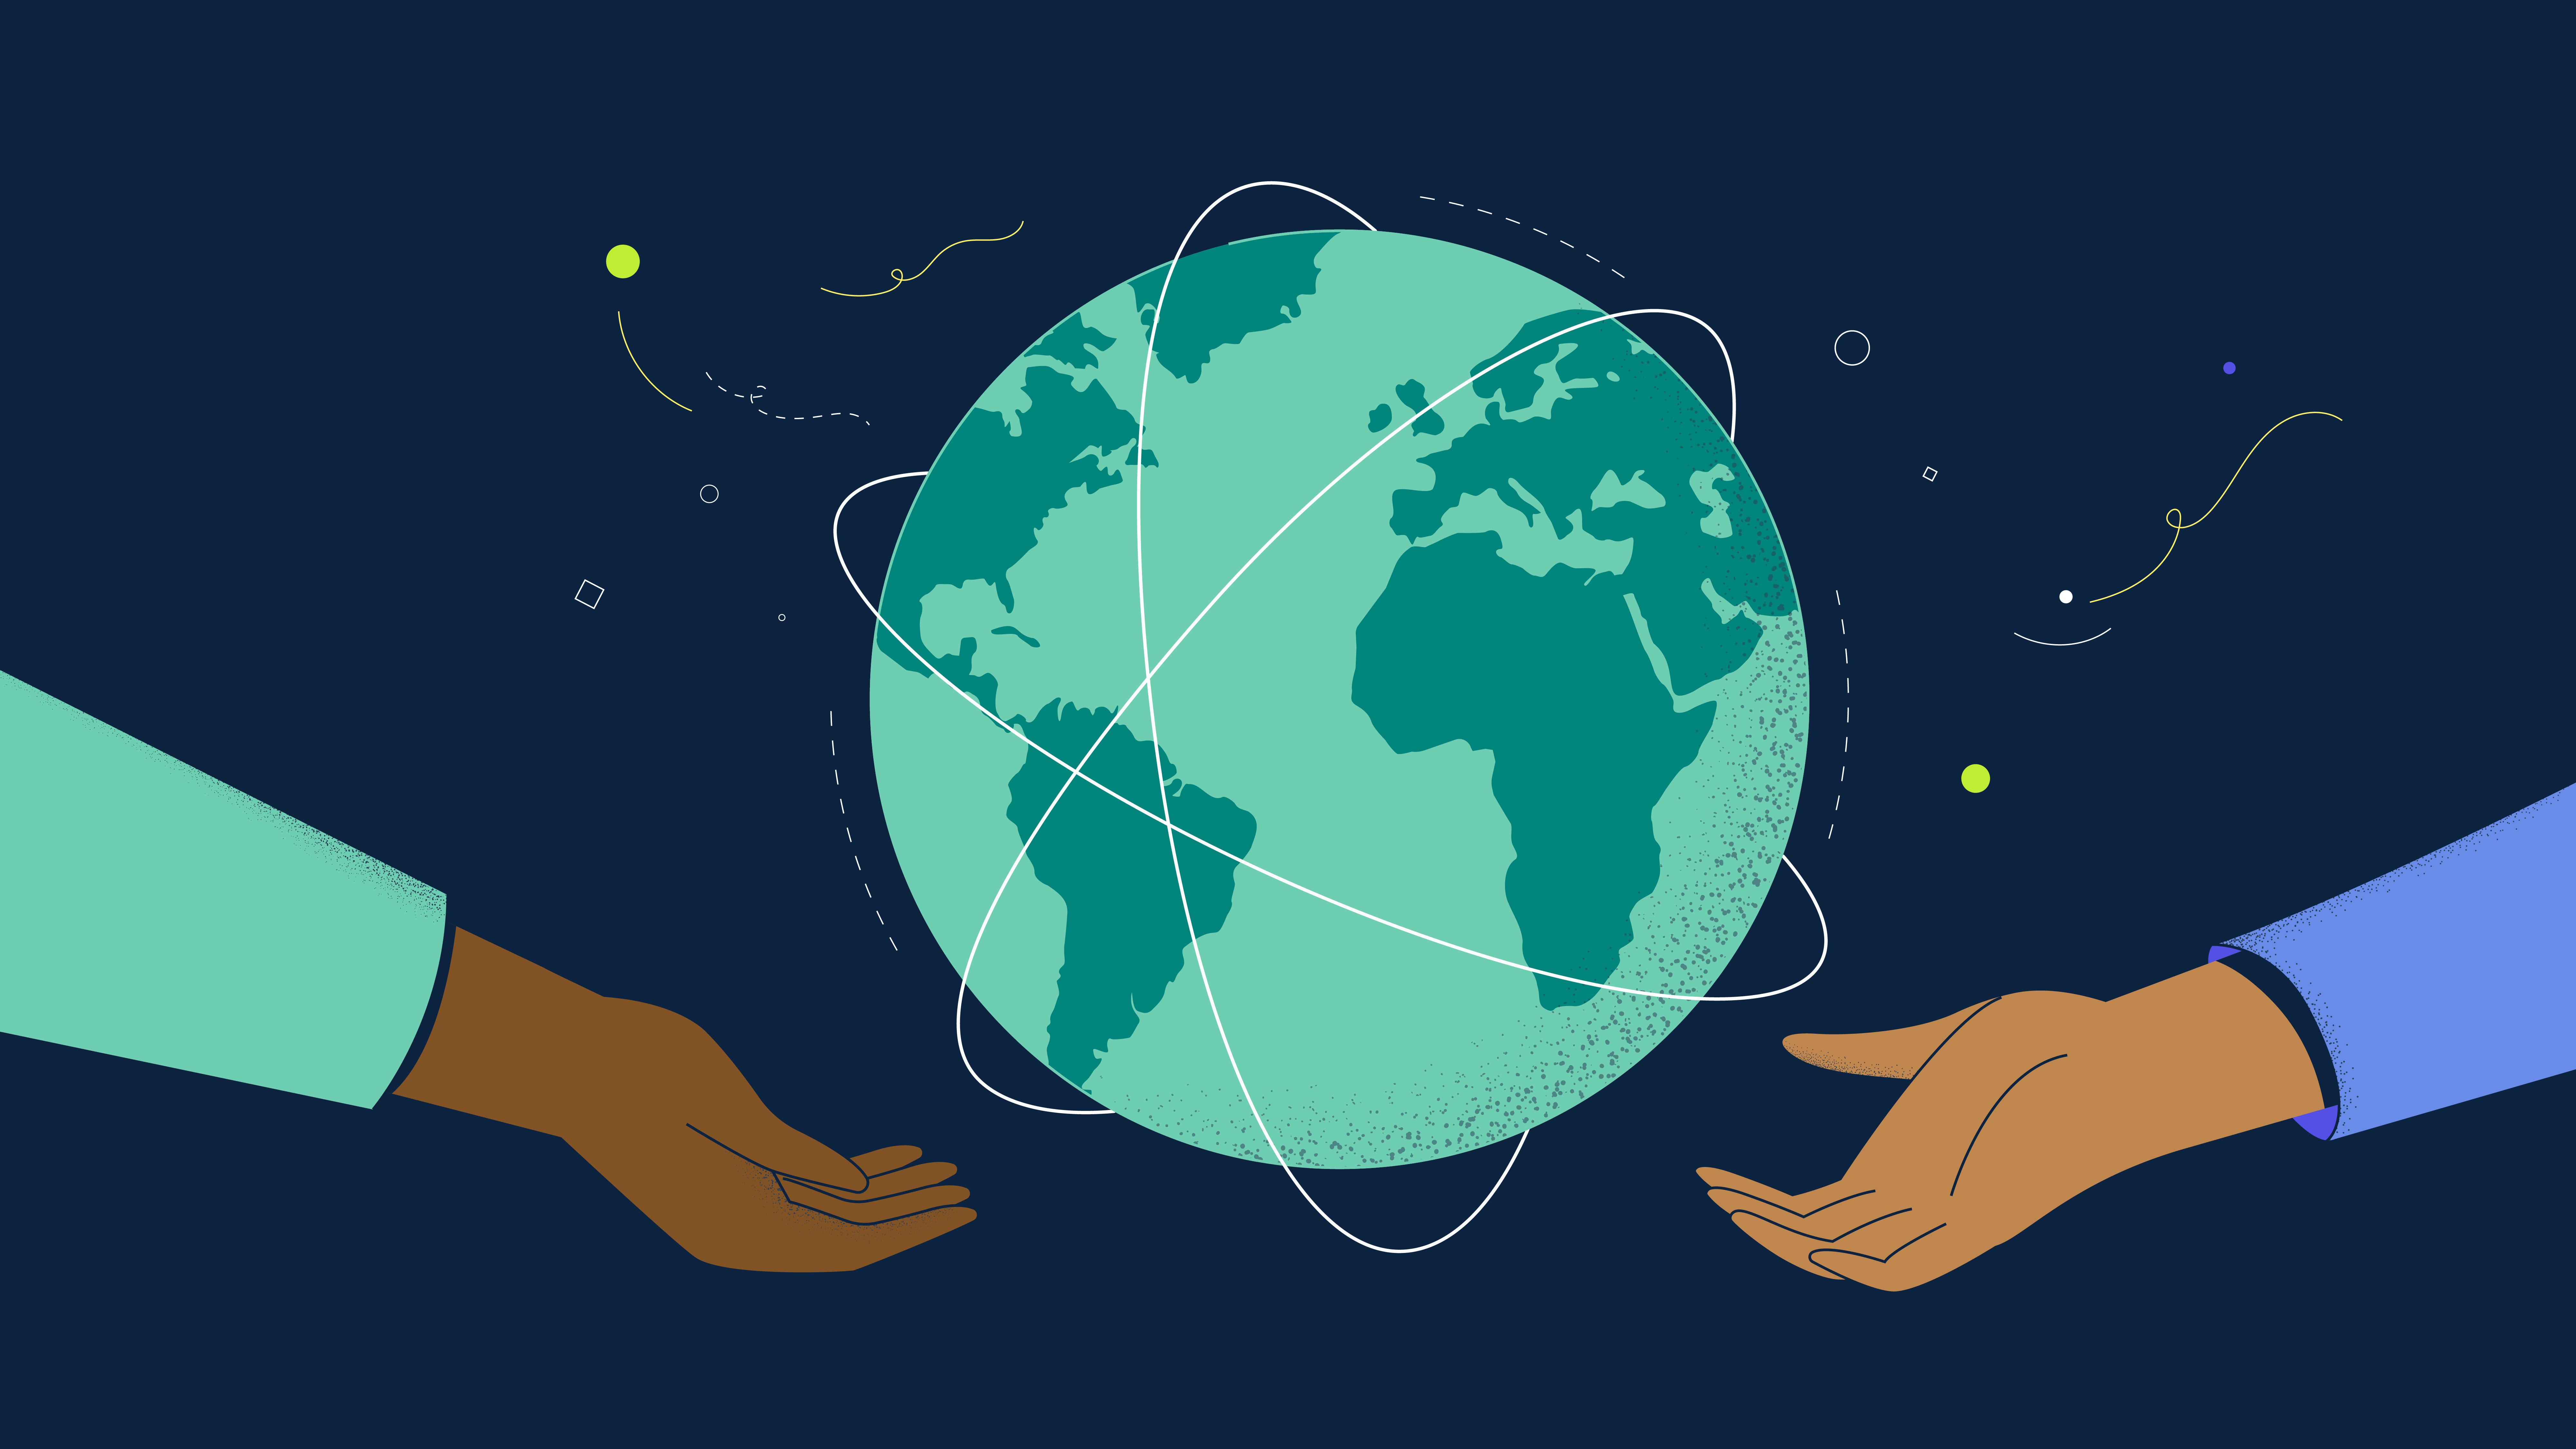 Eine Illustration zum Thema Migration auf der zwei Hände abgebildet sind, die eine Weltkugel halten.